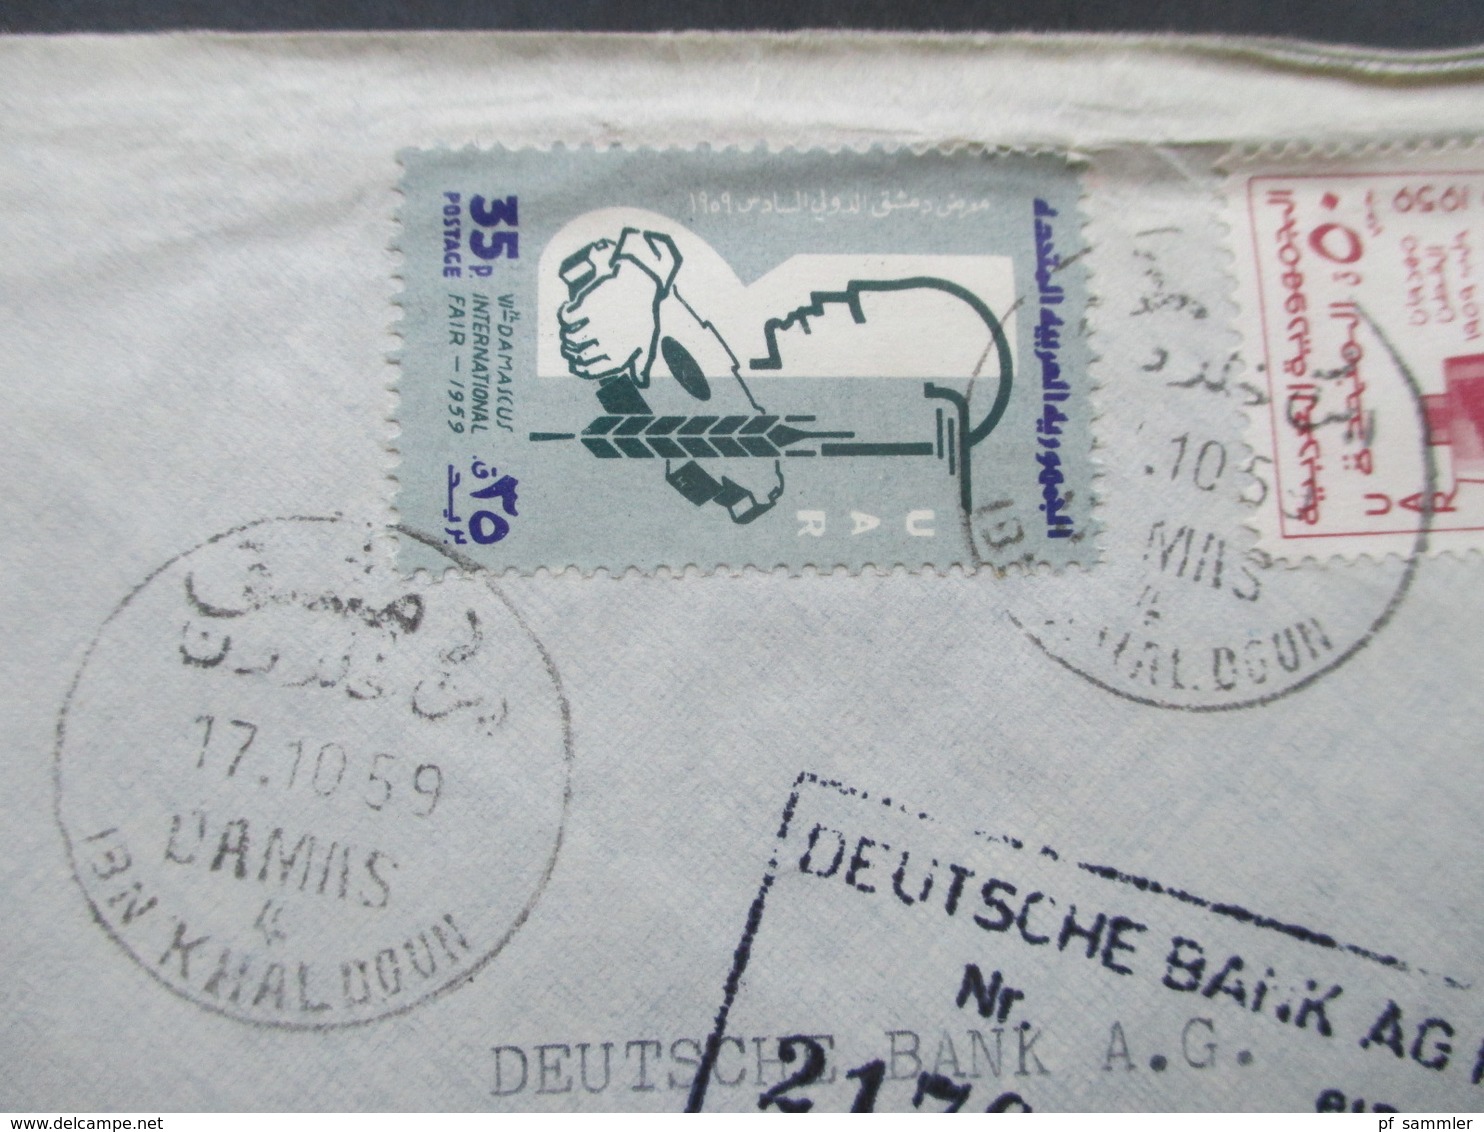 Syrien / UAR 1959 Air Mail / Luftpost Societe De Banques Reunies S.A.S. Einschreiben R No 827 / Arabische Schrift - Syrië